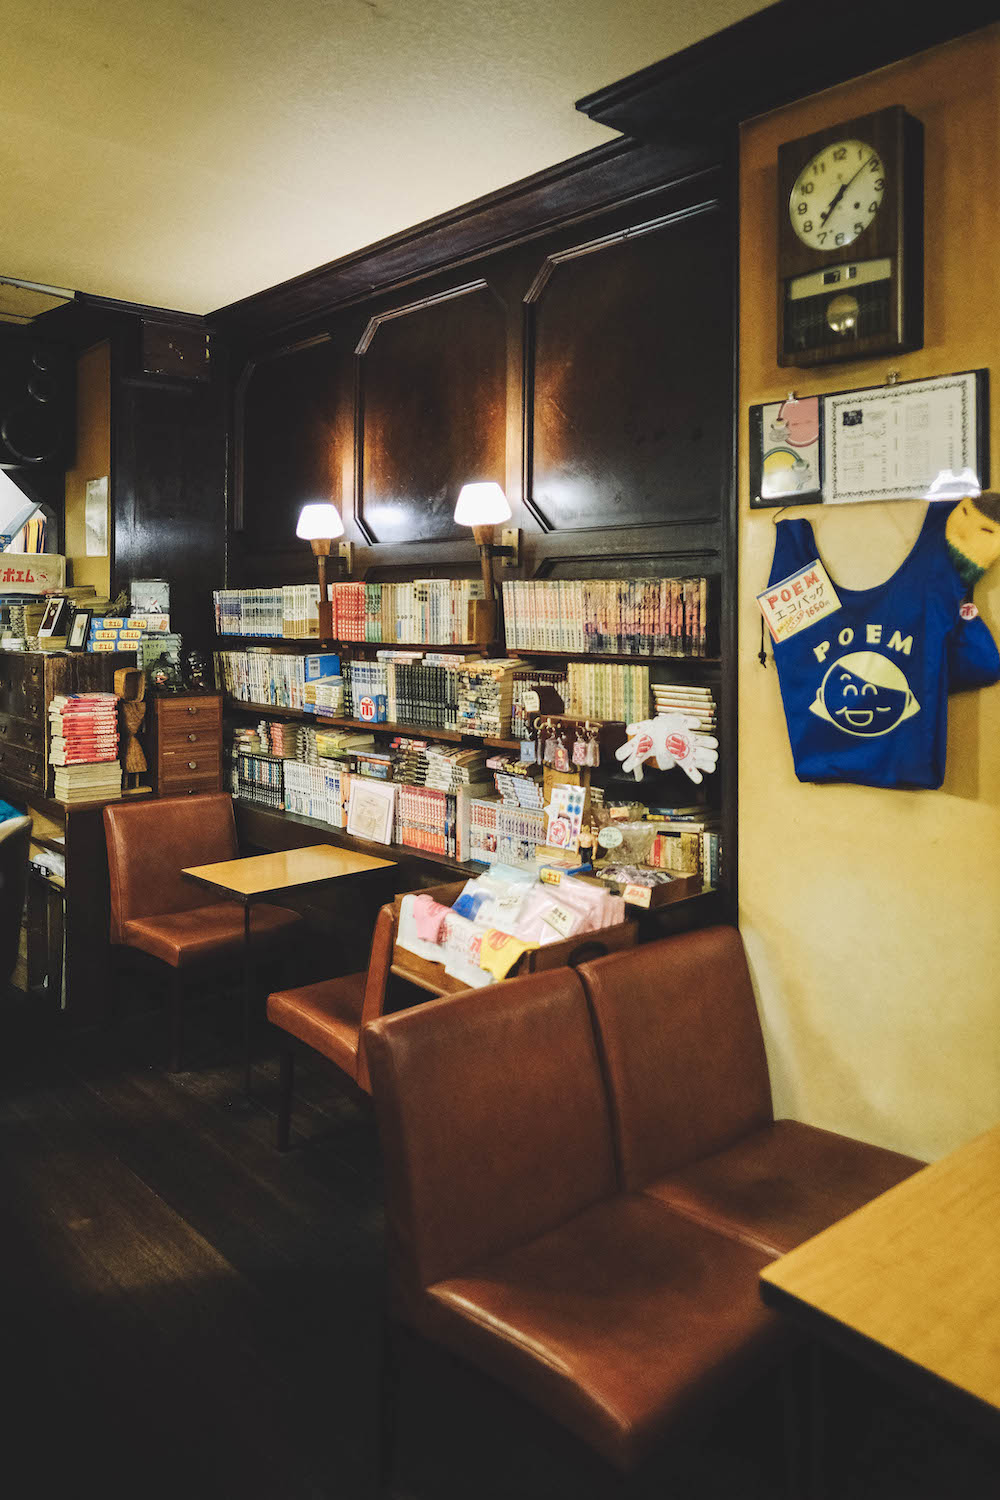 ポエム 神戶元町喫茶店44